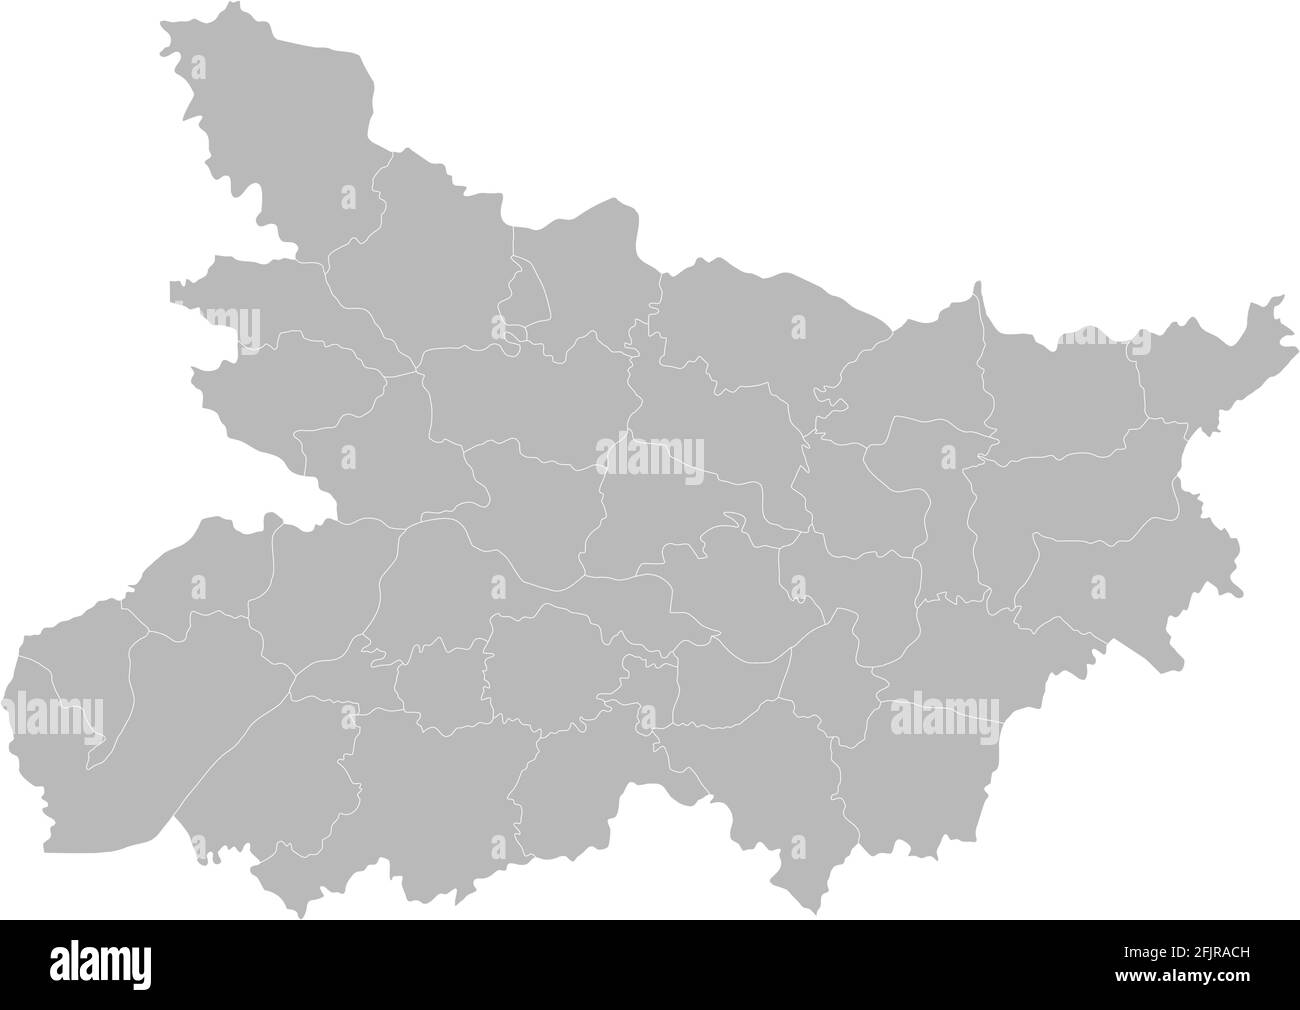 Mappa dei distretti di Bihar. Stato indiano. Sfondo grigio. Concetti e background aziendali. Illustrazione Vettoriale